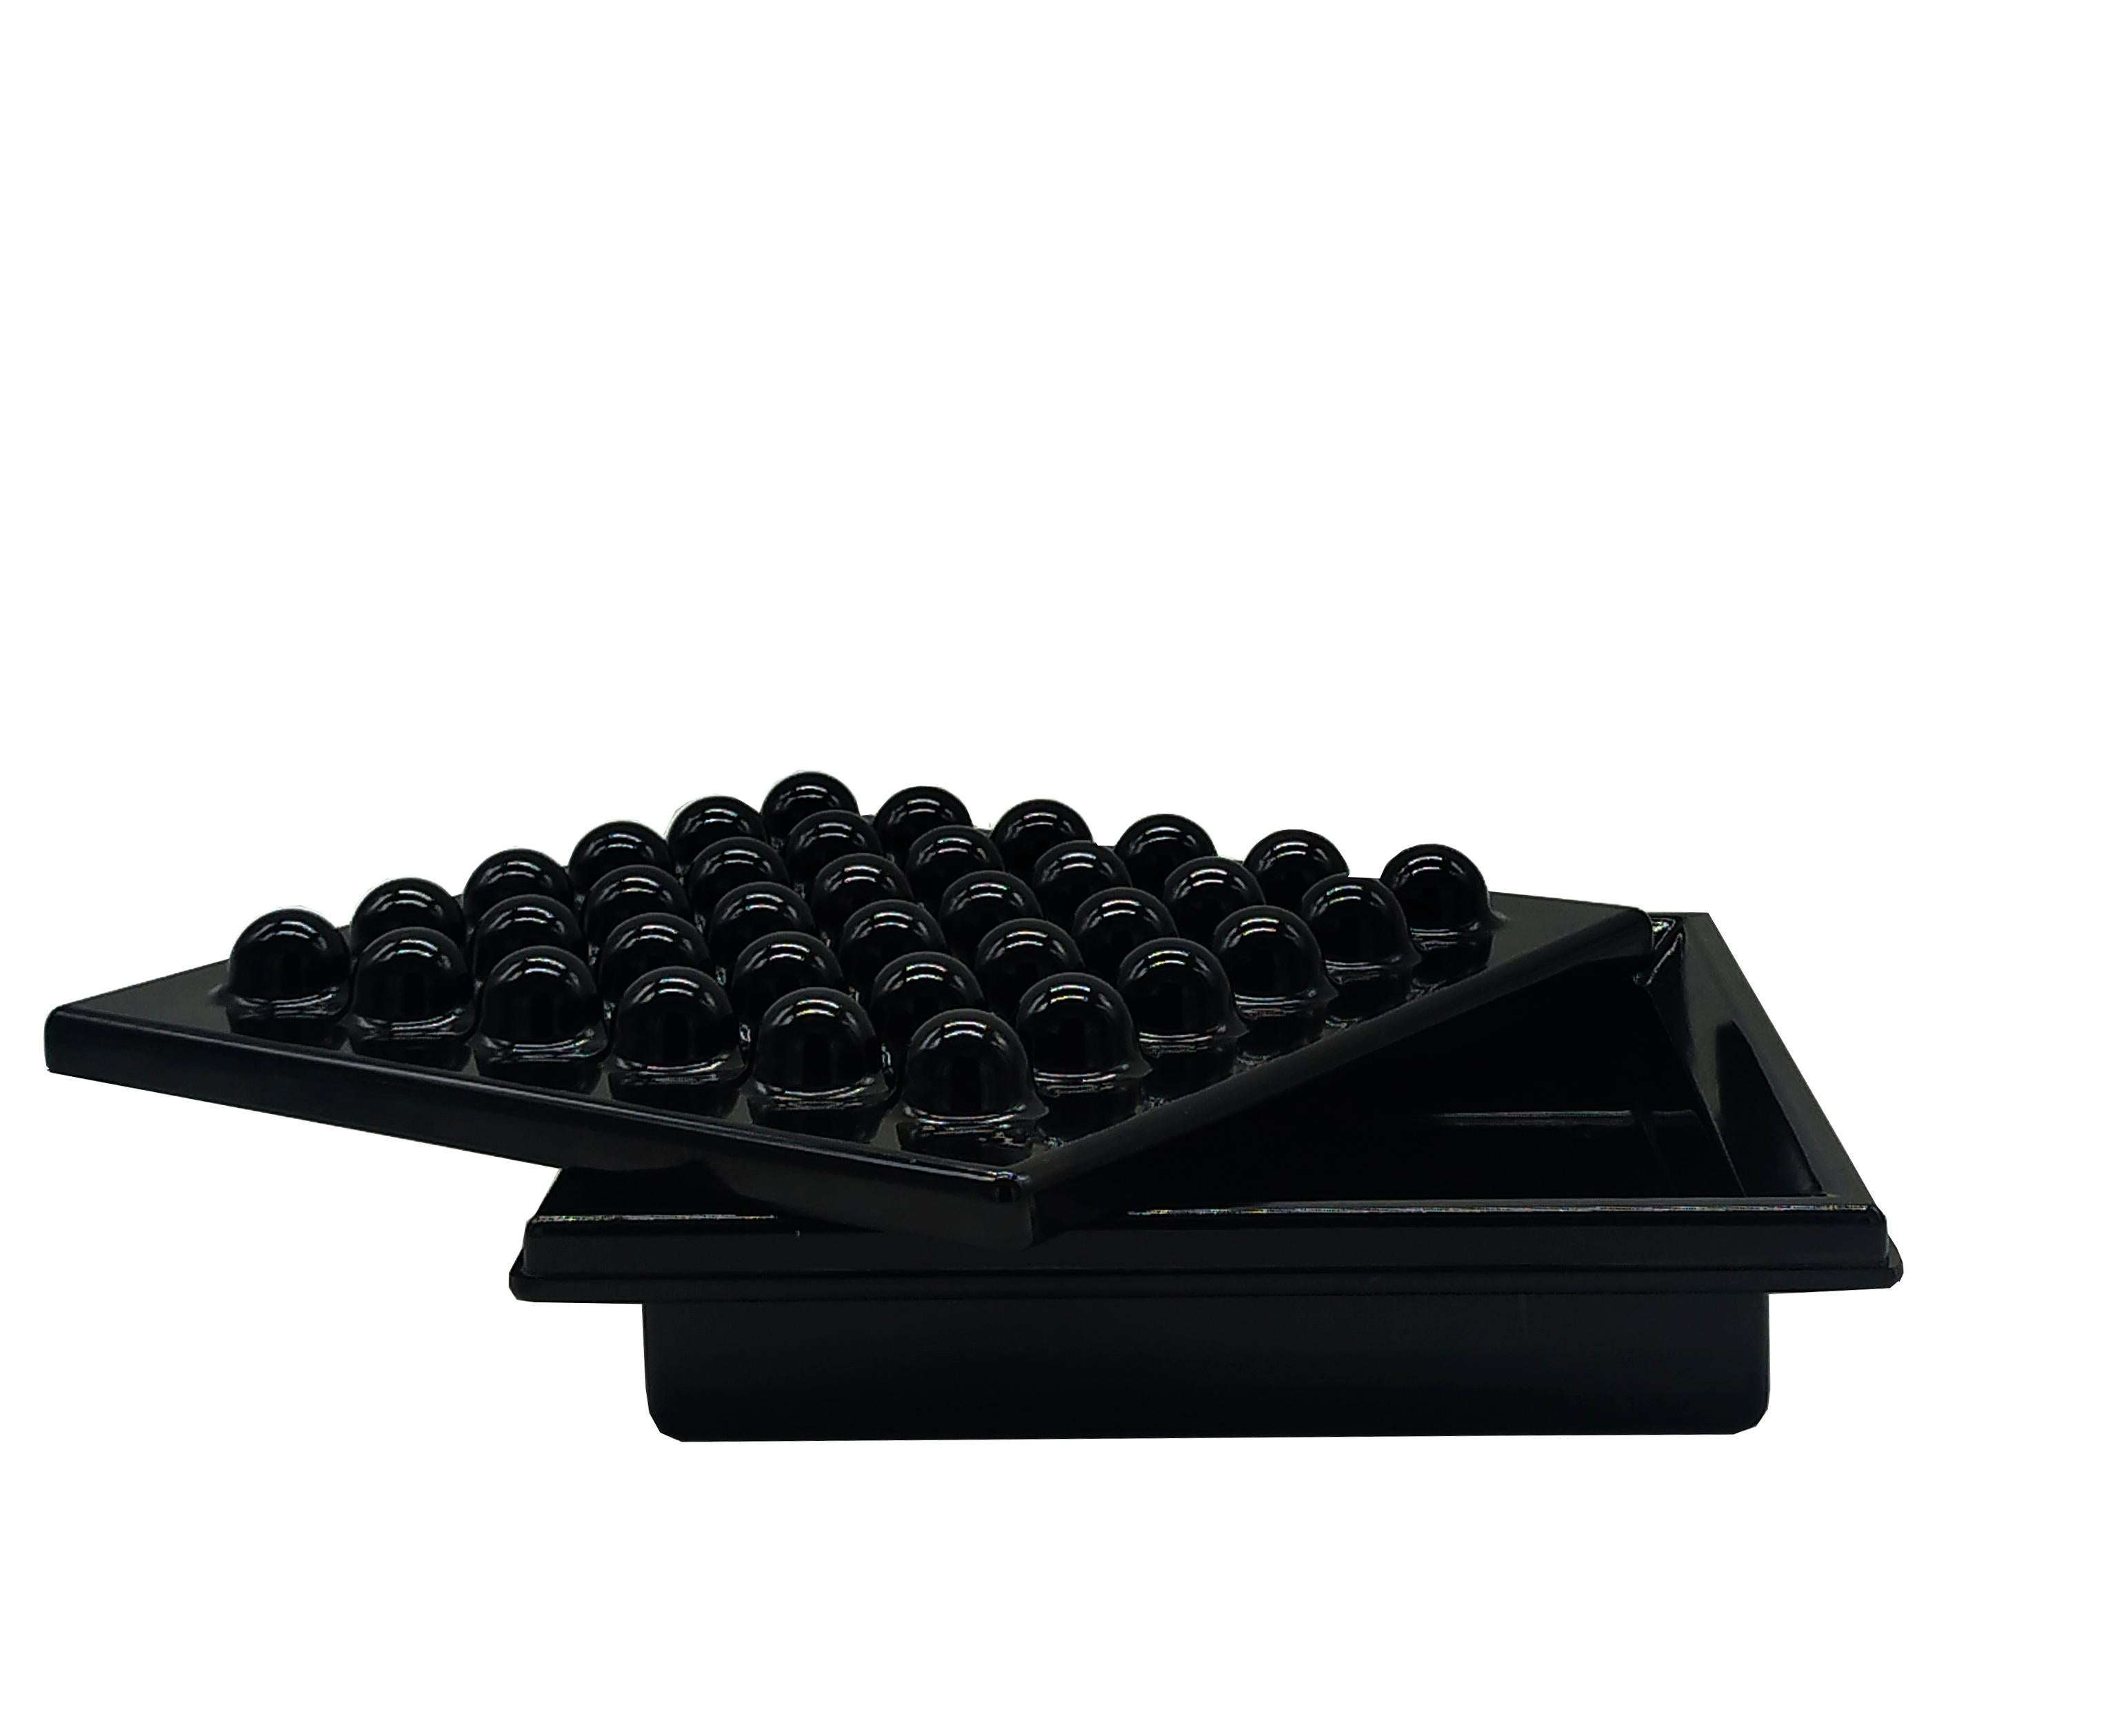 Großer schwarzer ABS-Aschenbecher, Ettore Sottsass für Olivetti Synthesis, Serie Sistema 45, 1972.
 Ikonisches Objekt des revolutionären Büromöbelsystems Synthesis 45, das 1973 von Olivetti vorgestellt und von Ettore Sottsass entworfen wurde. 
